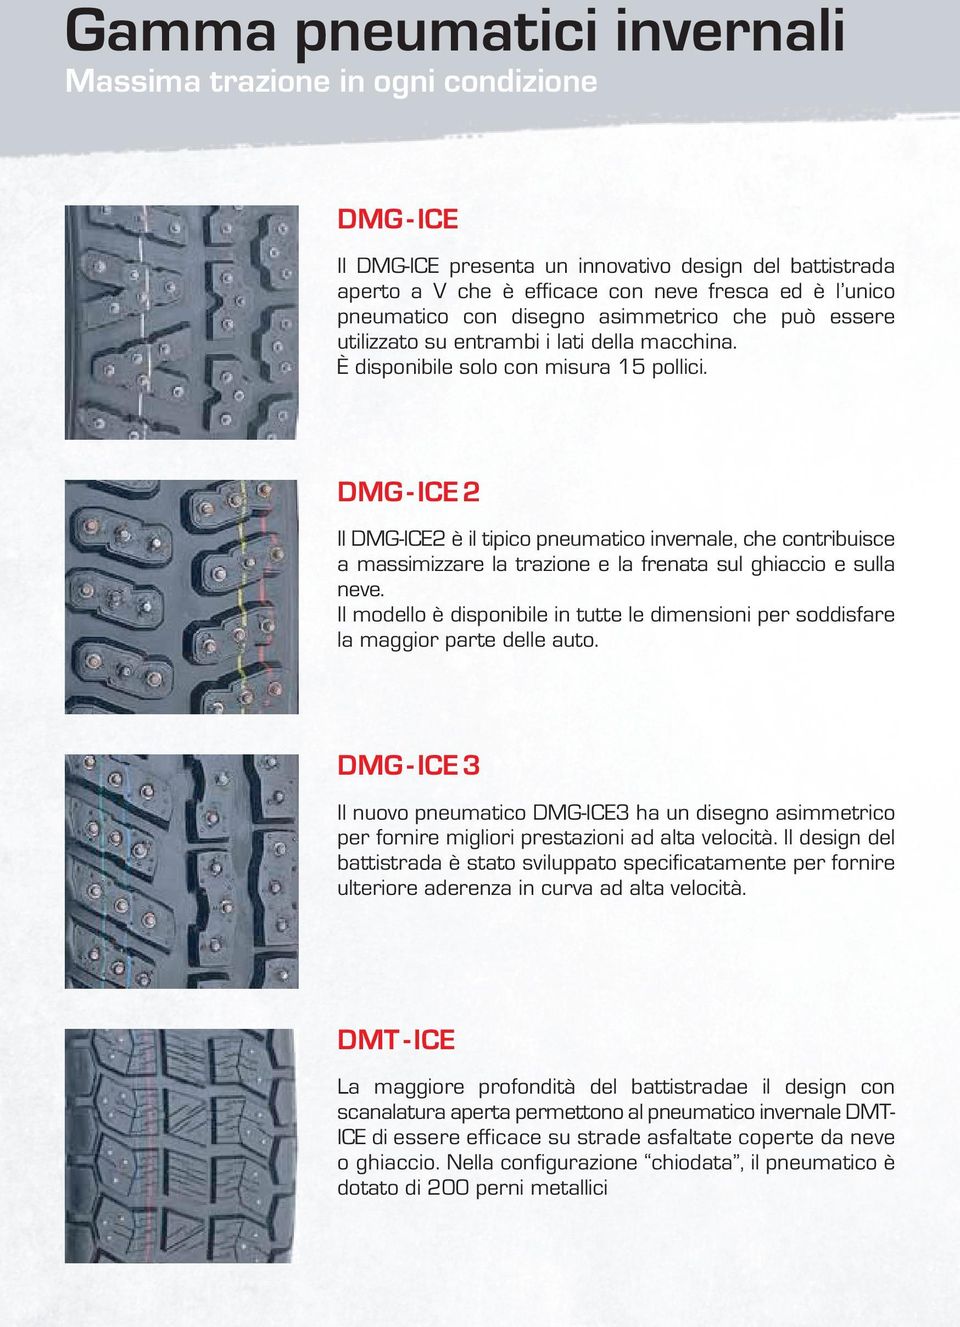 DMG - ICE 2 Il DMG-ICE2 è il tipico pneumatico invernale, che contribuisce a massimizzare la trazione e la frenata sul ghiaccio e sulla neve.